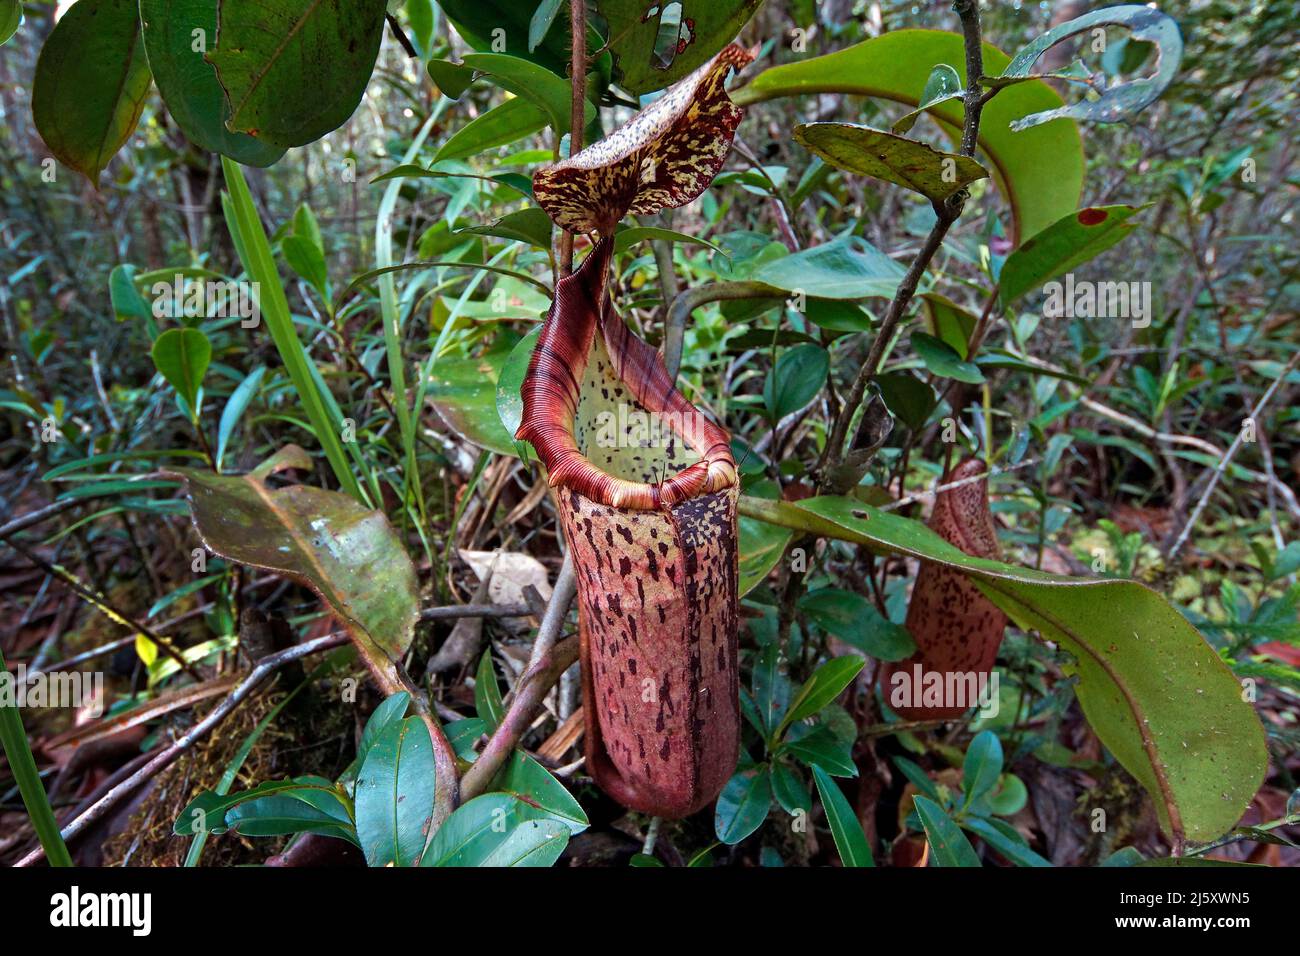 Tropical pianta brocca, verniciato pianta brocca o Burbidge's Pitcher-Plant (Nepenthes burbidgeae), una pianta carnivora a foresta pluviale, Borneo, Malaysia Foto Stock